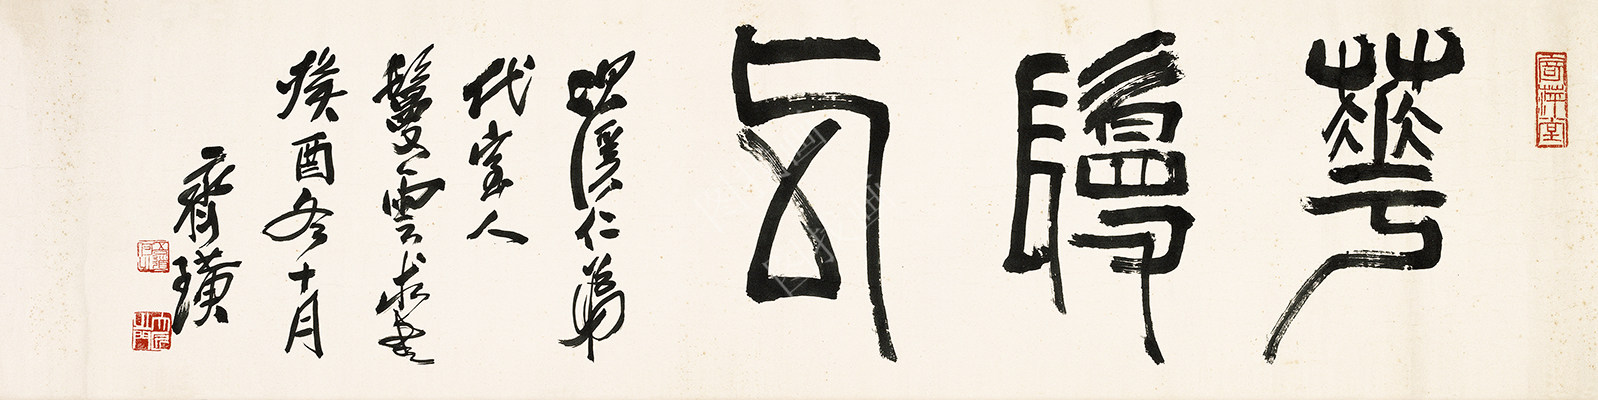 齐白石 书法篆刻卷 (54) 12x58cm